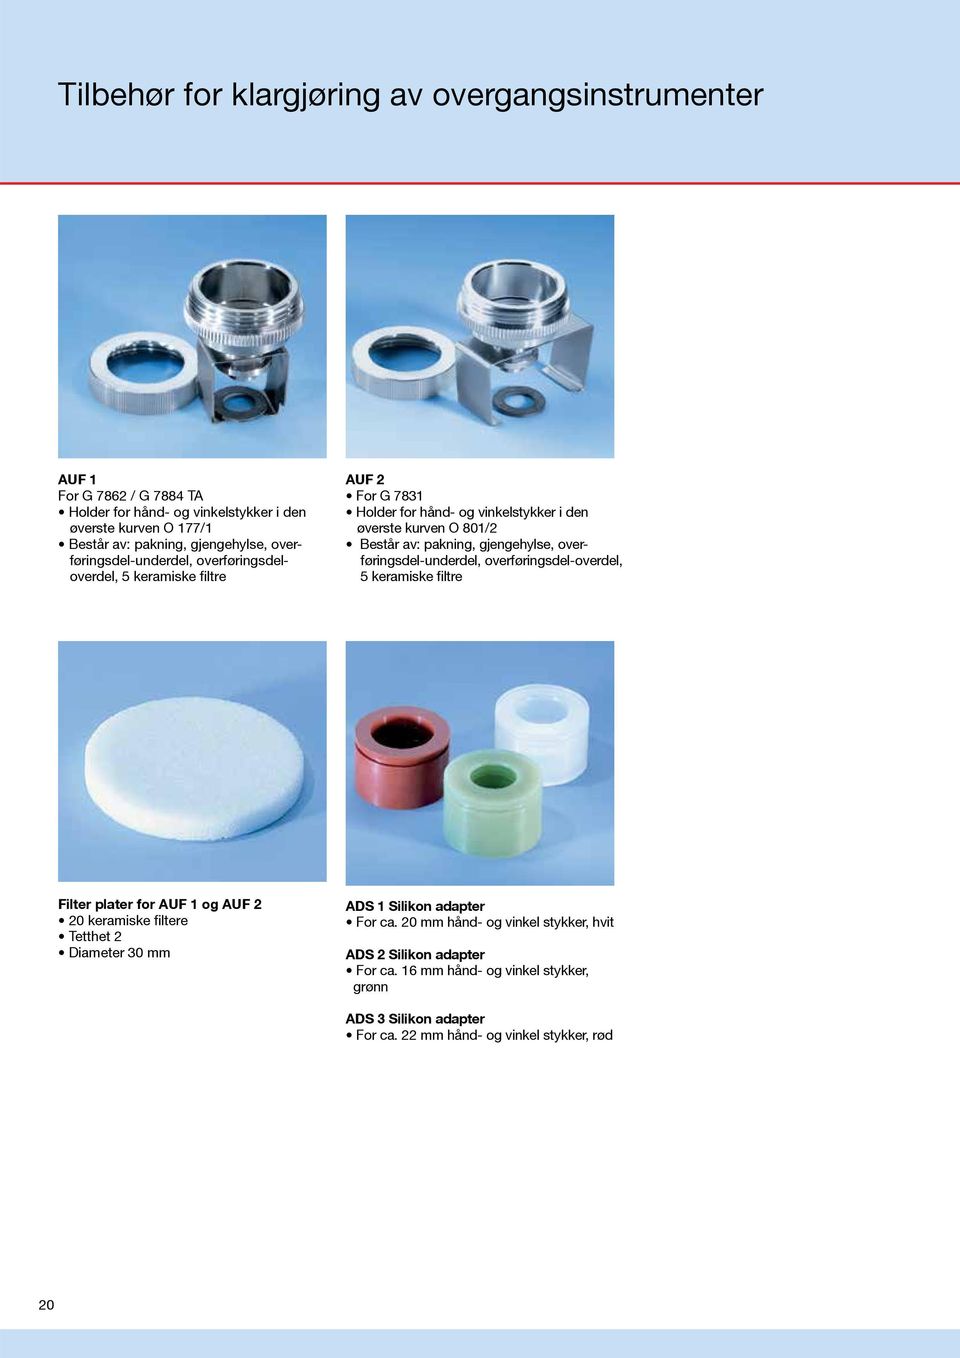 gjengehylse, overføringsdel-underdel, overføringsdel-overdel, 5 keramiske filtre Filter plater for AUF 1 og AUF 2 20 keramiske filtere Tetthet 2 Diameter 30 mm ADS 1 Silikon